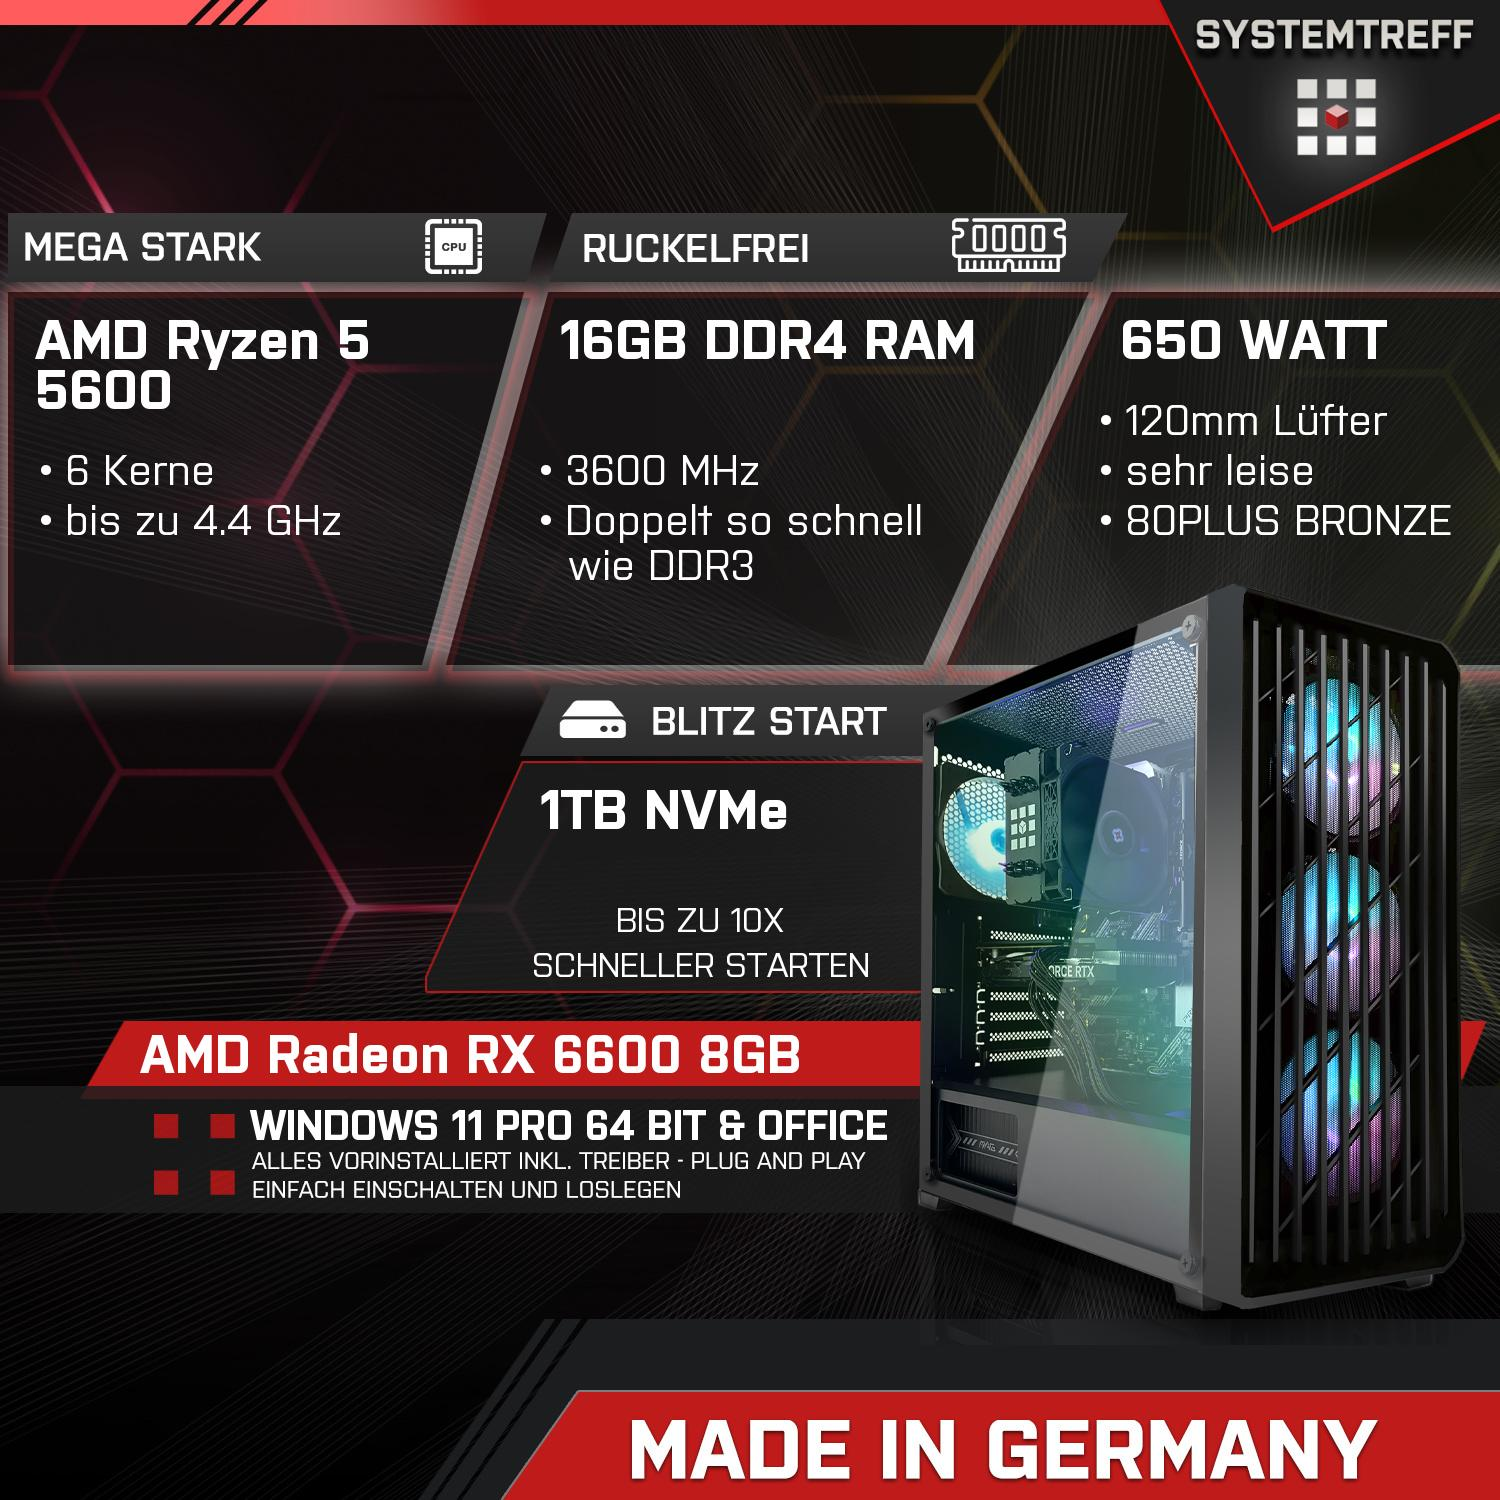 SYSTEMTREFF Gaming Komplett Komplett RX GB GDDR6, 8 RAM, AMD 5600, PC AMD mit GB GB Ryzen 16 mSSD, 6600 Prozessor, 8GB 1000 5 5600 Radeon